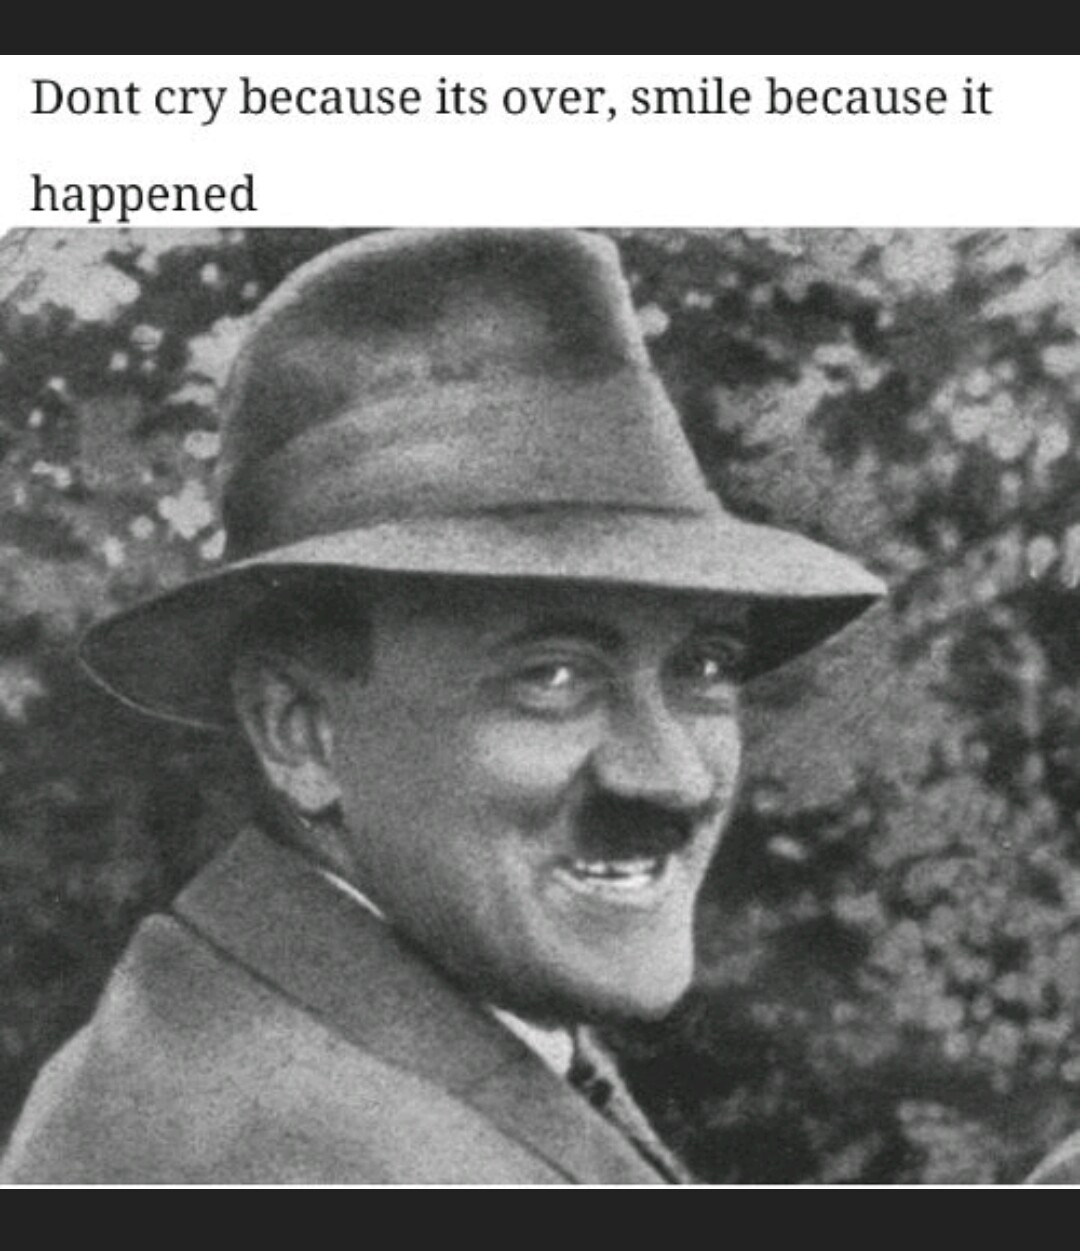 Herr führer is the hero we need - meme